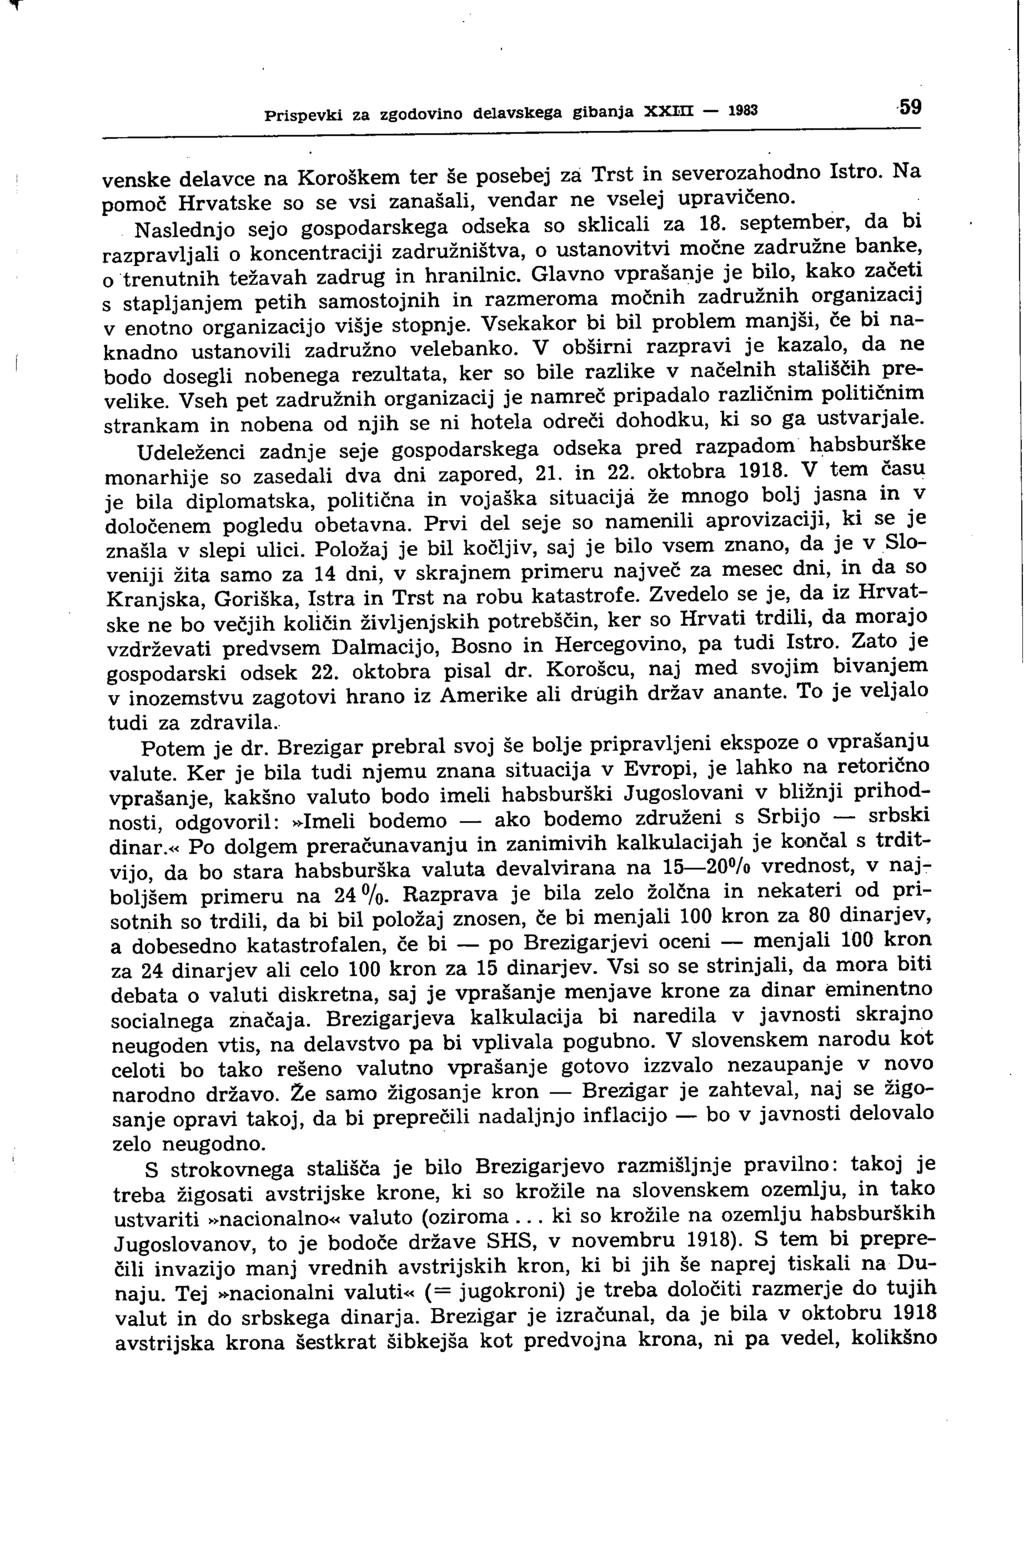 Prispevki za zgodovino delavskega gibanja XXm 1983 59 venske delavce na Koroškem ter še posebej za Trst in severozahodno Istro. Na pomoč Hrvatske so se vsi zanašali, vendar ne vselej upravičeno.